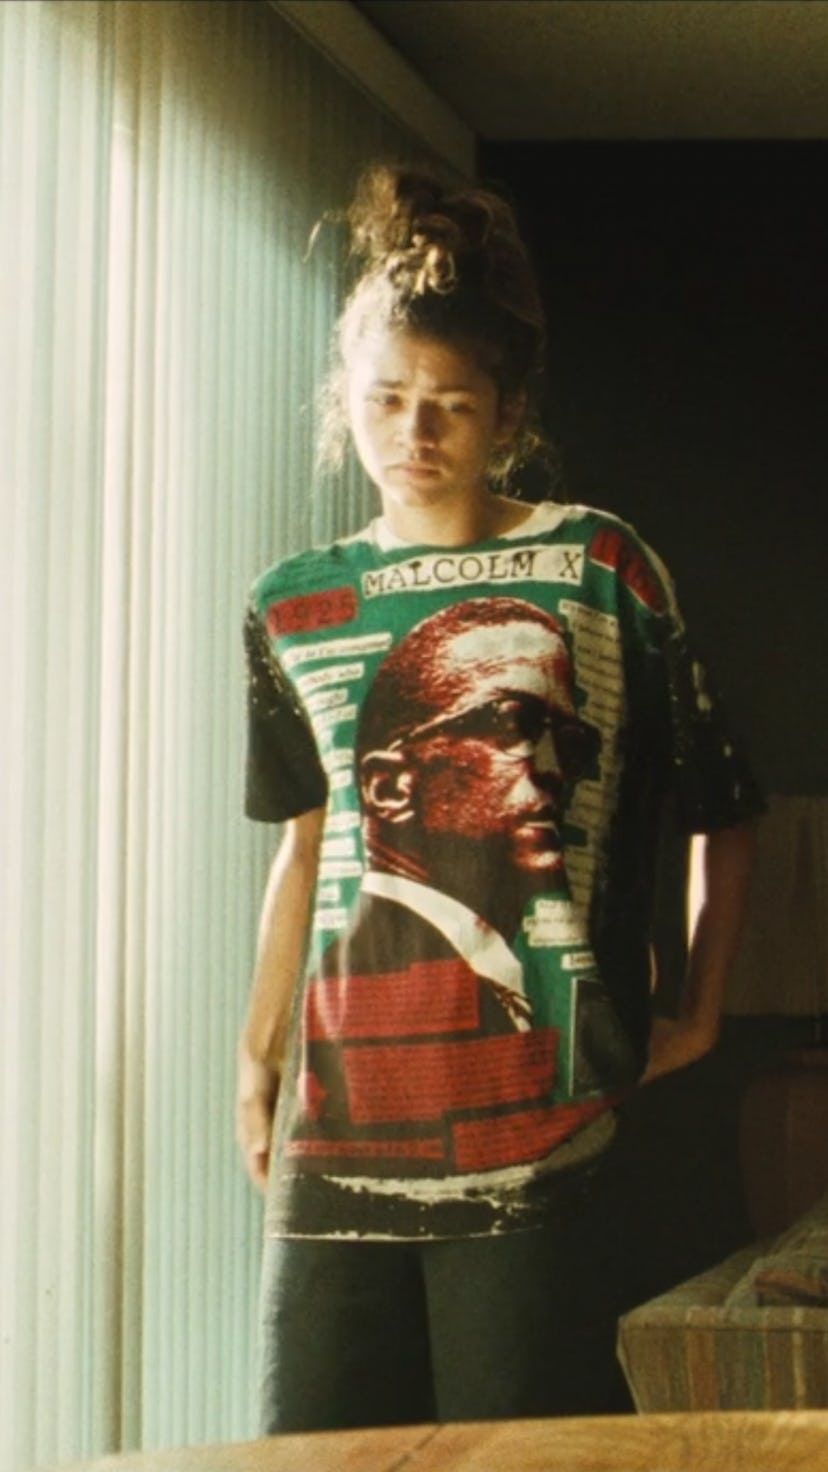 Rue, played by Zendaya, wearing a Malcolm X t-shirt in 'Euphoria' Season 2, Episode 6.